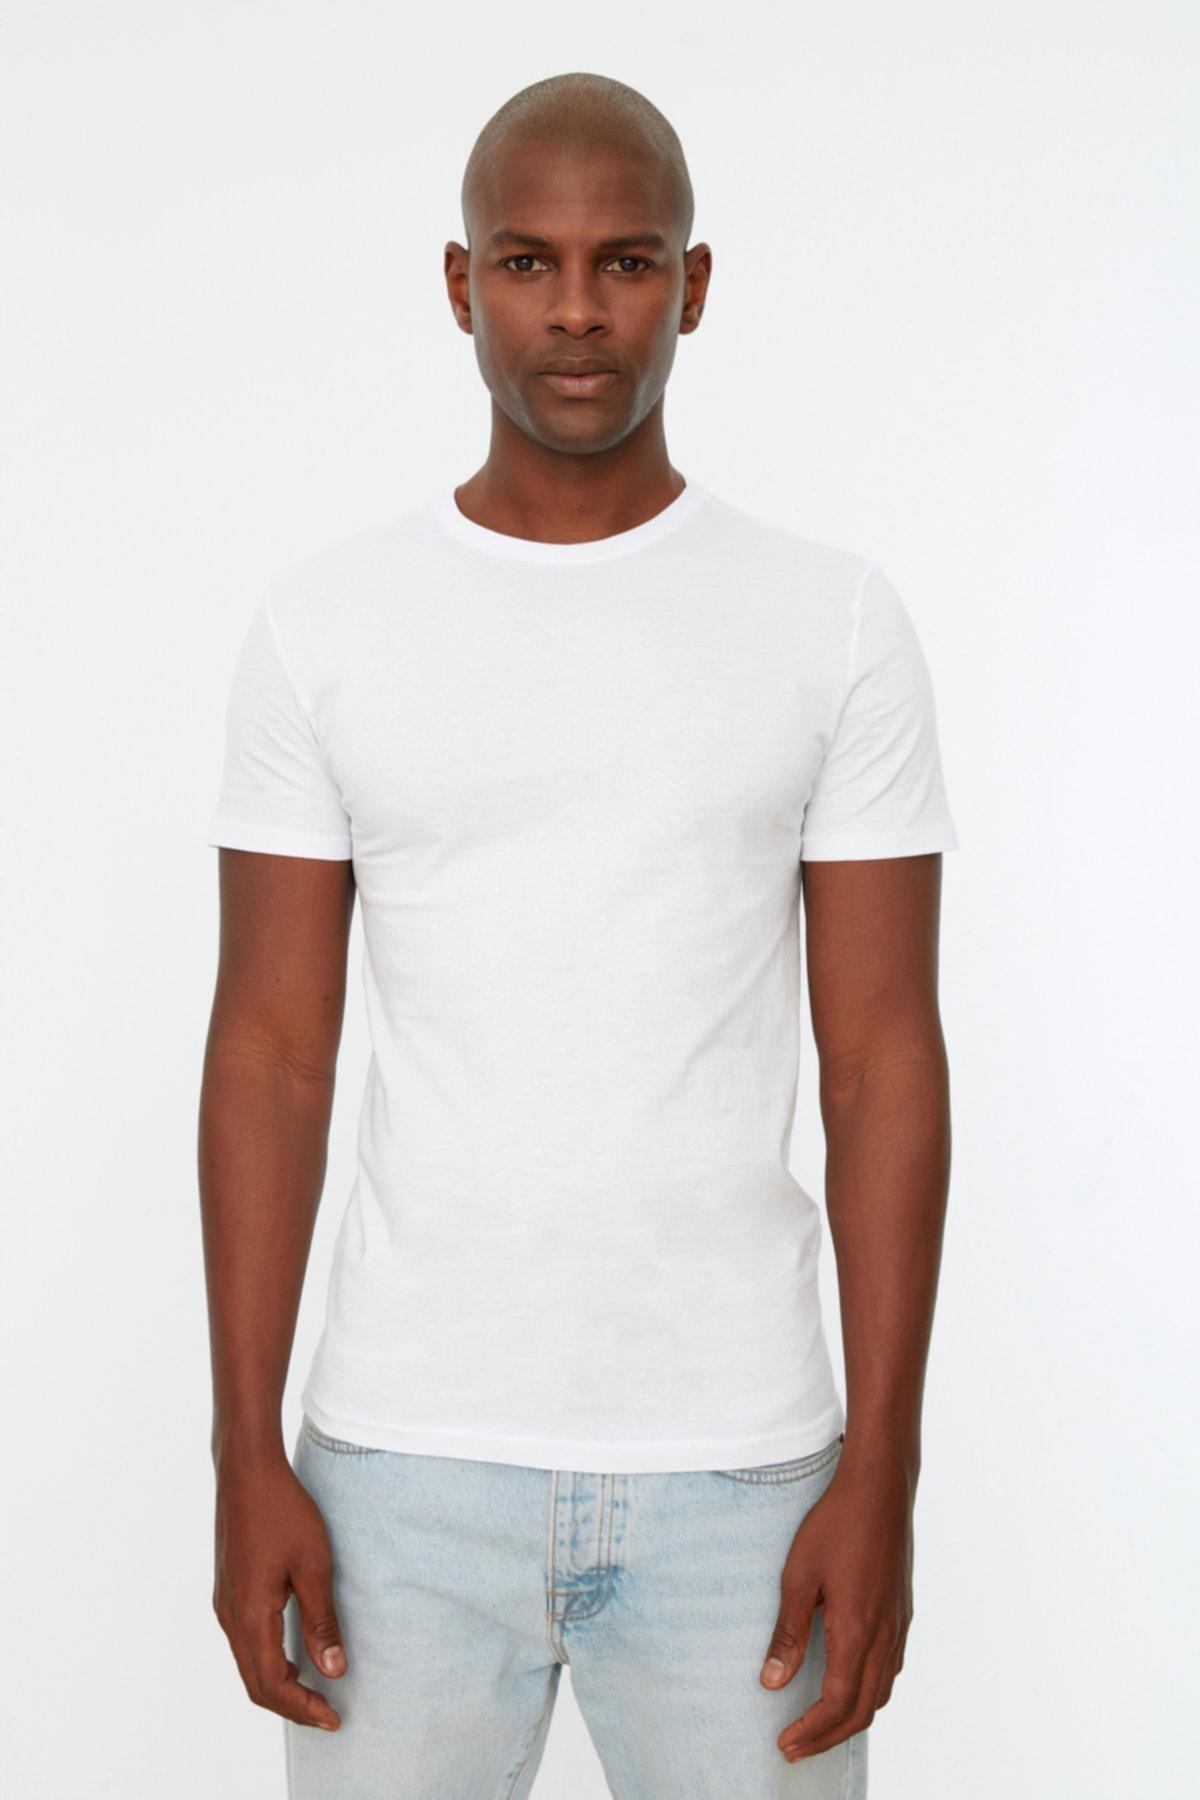 Trendyol - White Slim T-Shirt